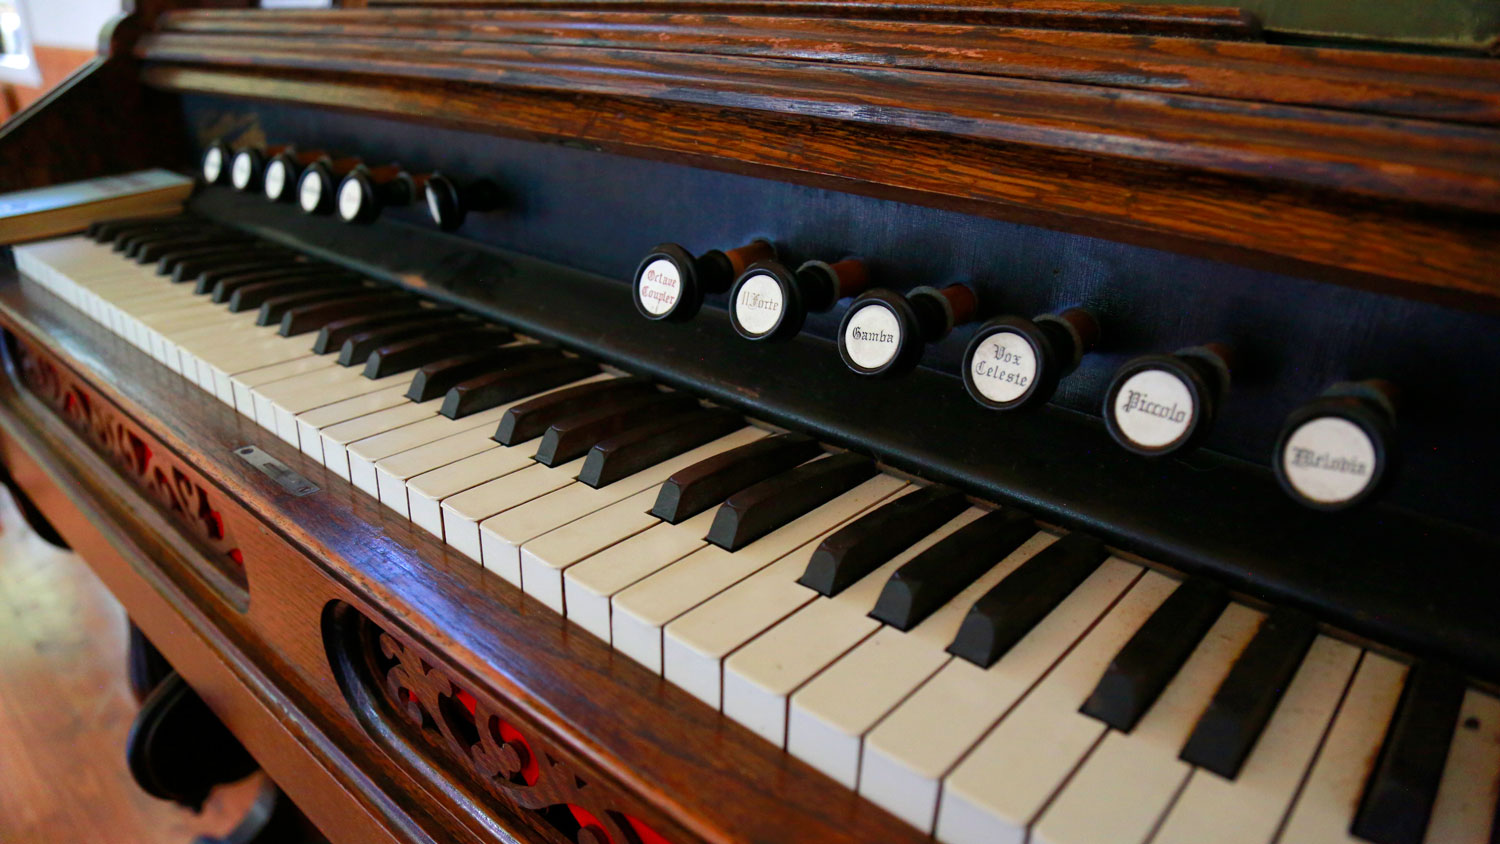 keyboard on the antique church organ